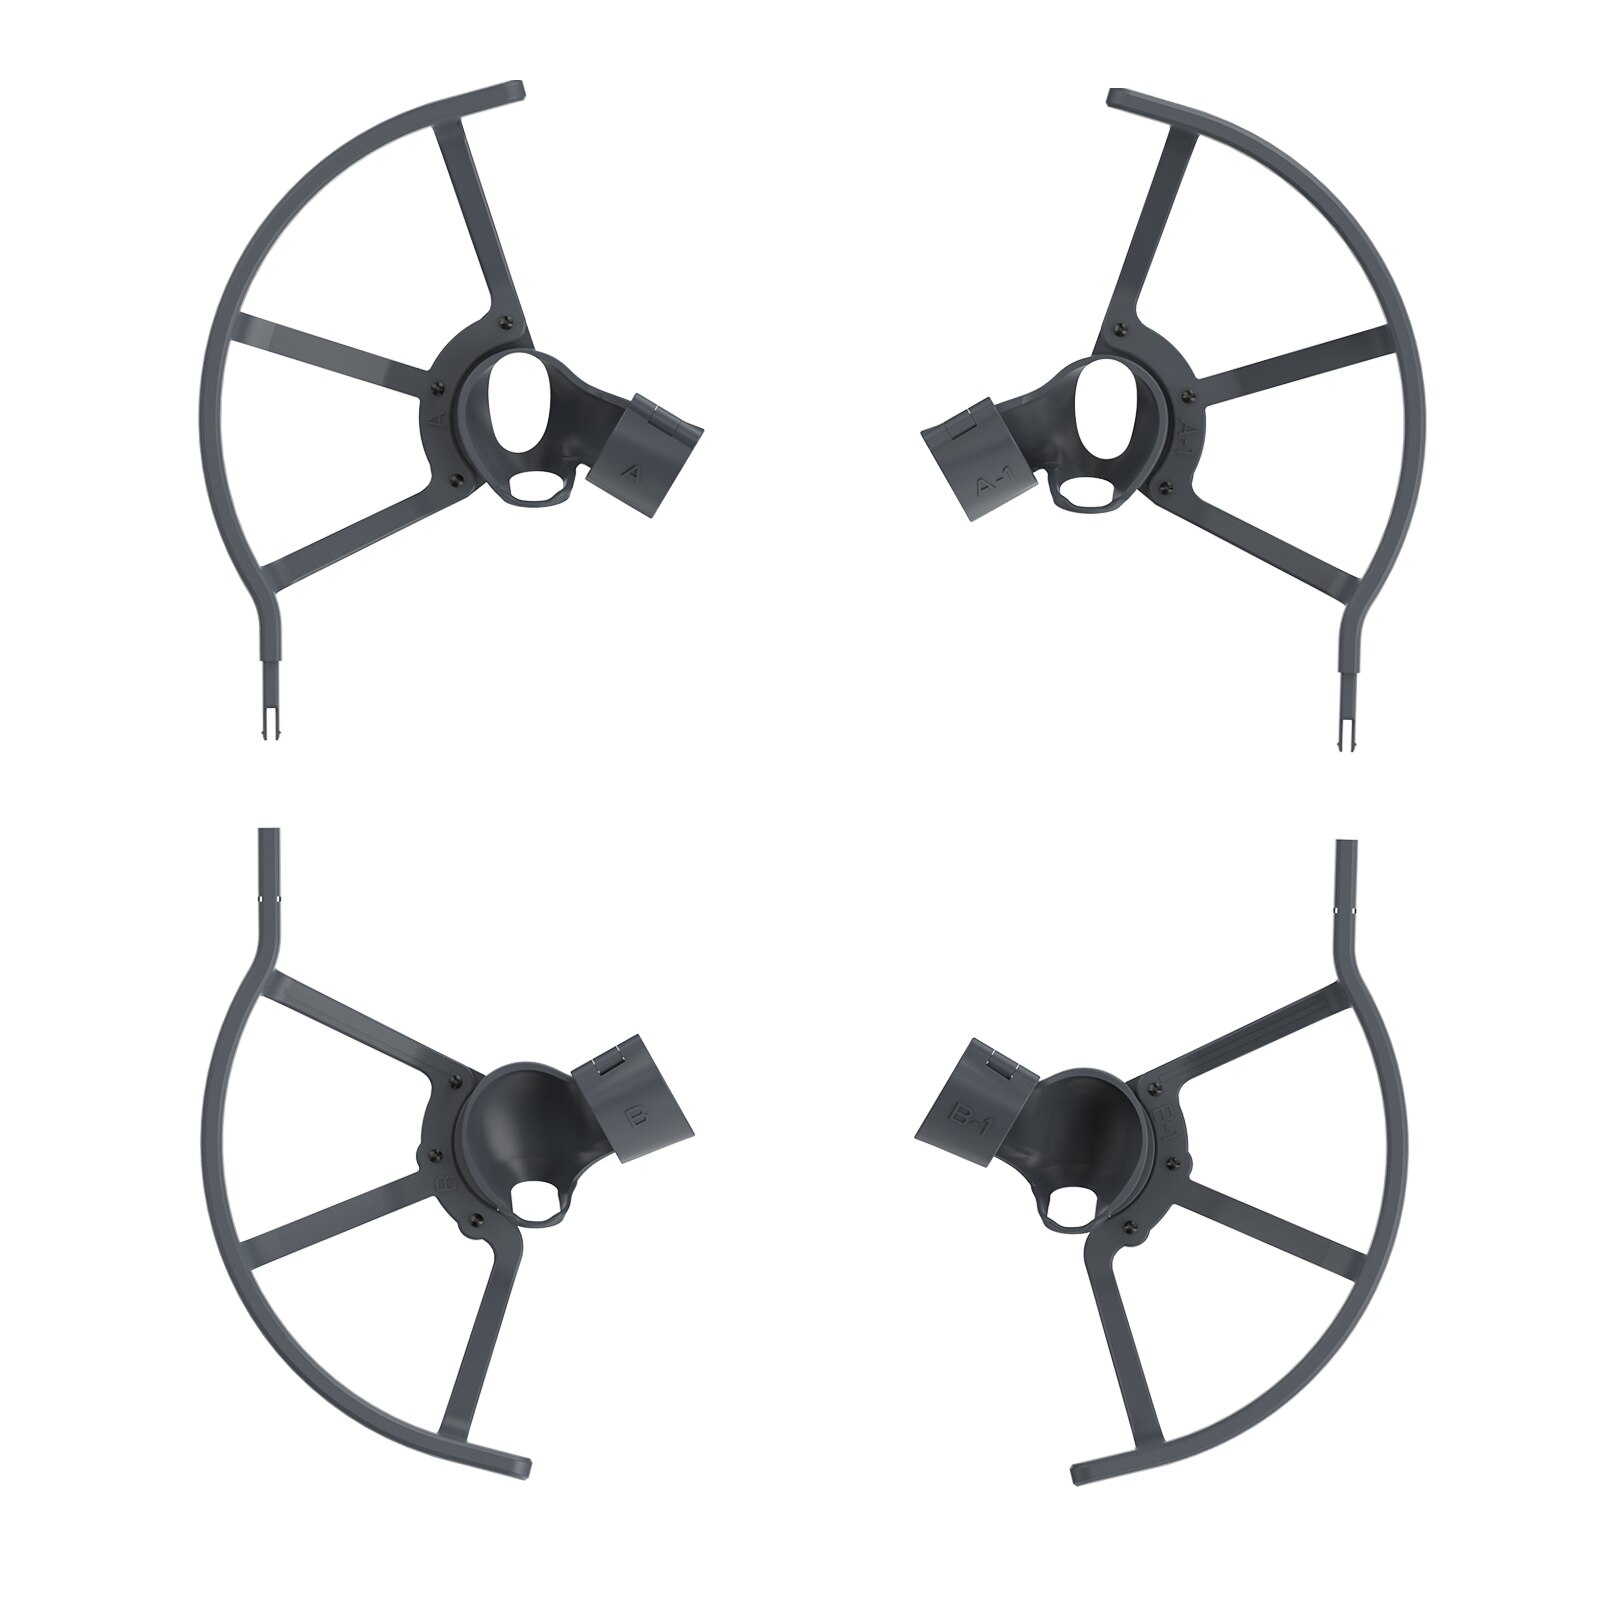 Mavic mini /mini 2 propeller guard prop protection kofanger til dji mavic mini /mini 2 fpv drone blade protector bur tilbehør